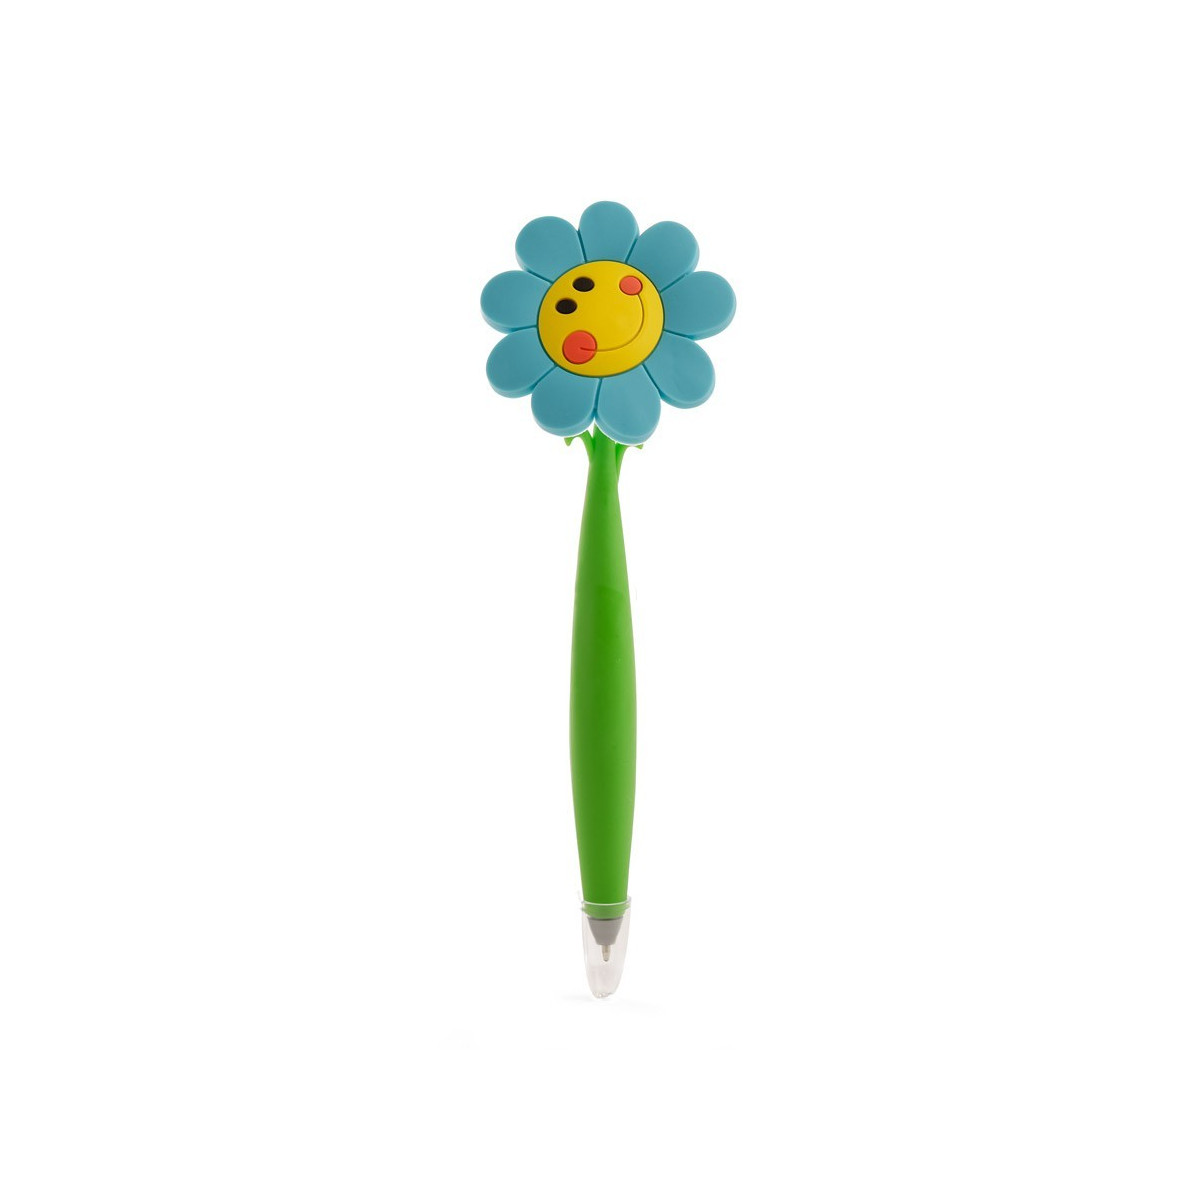 Bolígrafo con forma graciosa para regalar, forma flor con carita sonriente